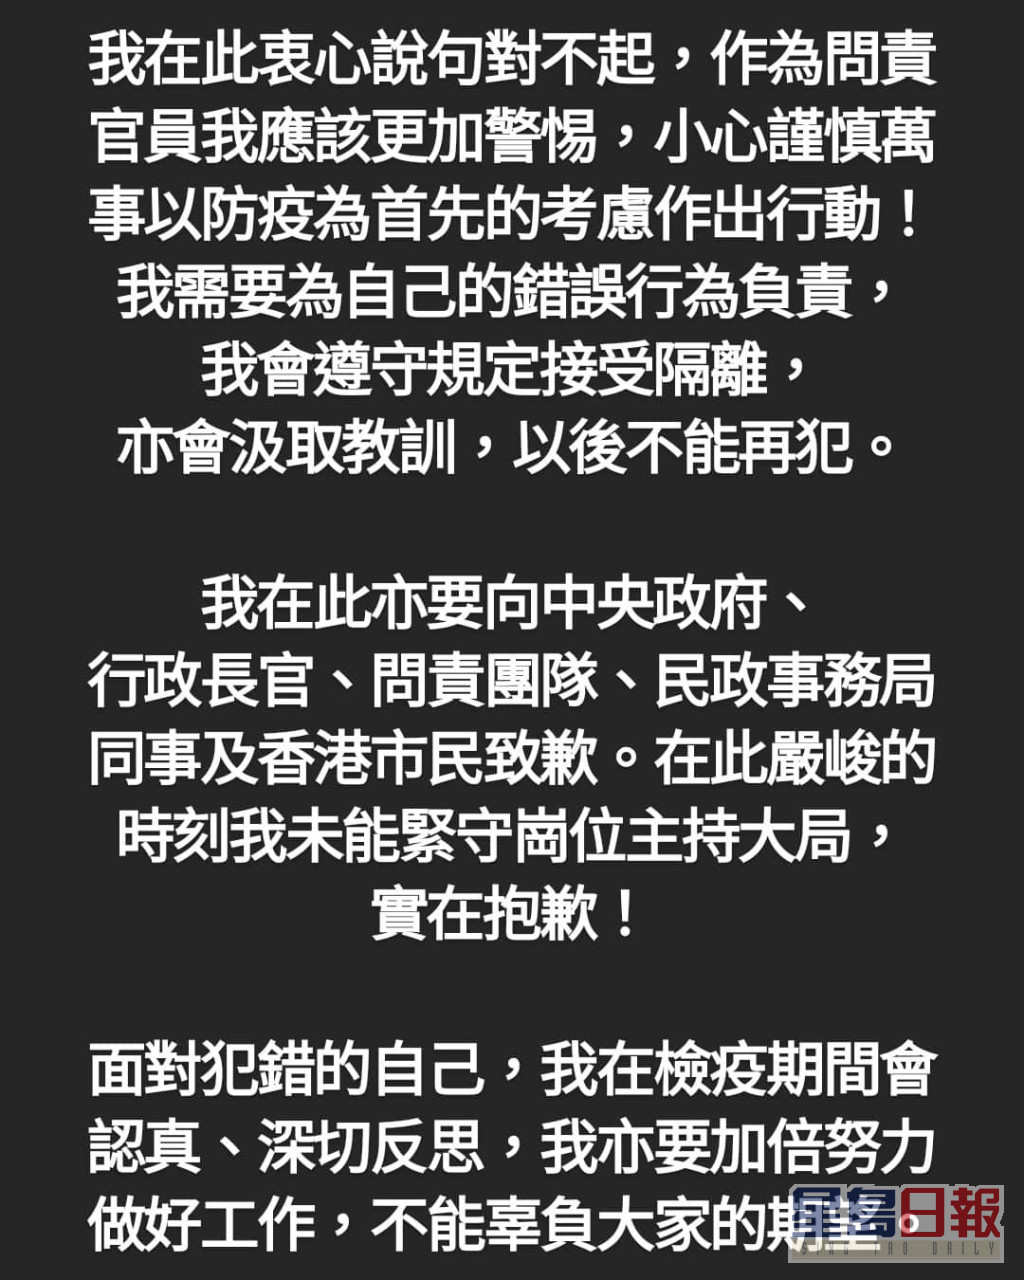 徐英伟社交平台发贴文道歉。